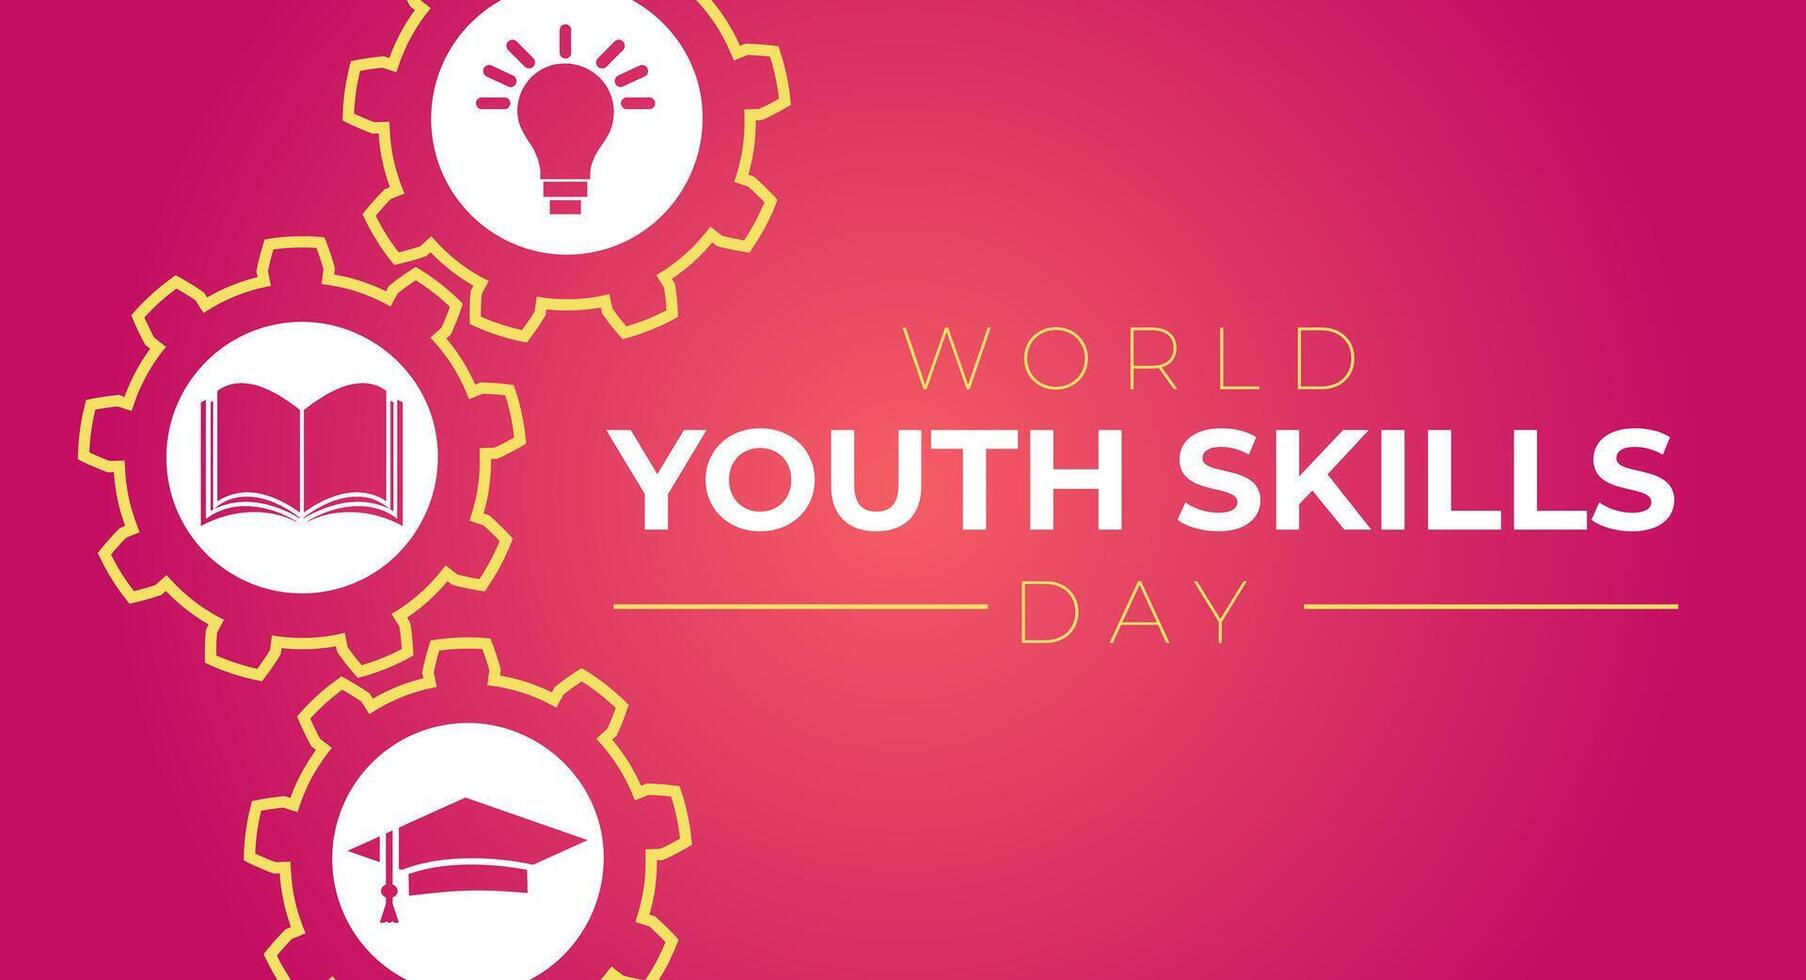 World Youth Skills Day illustration vektor